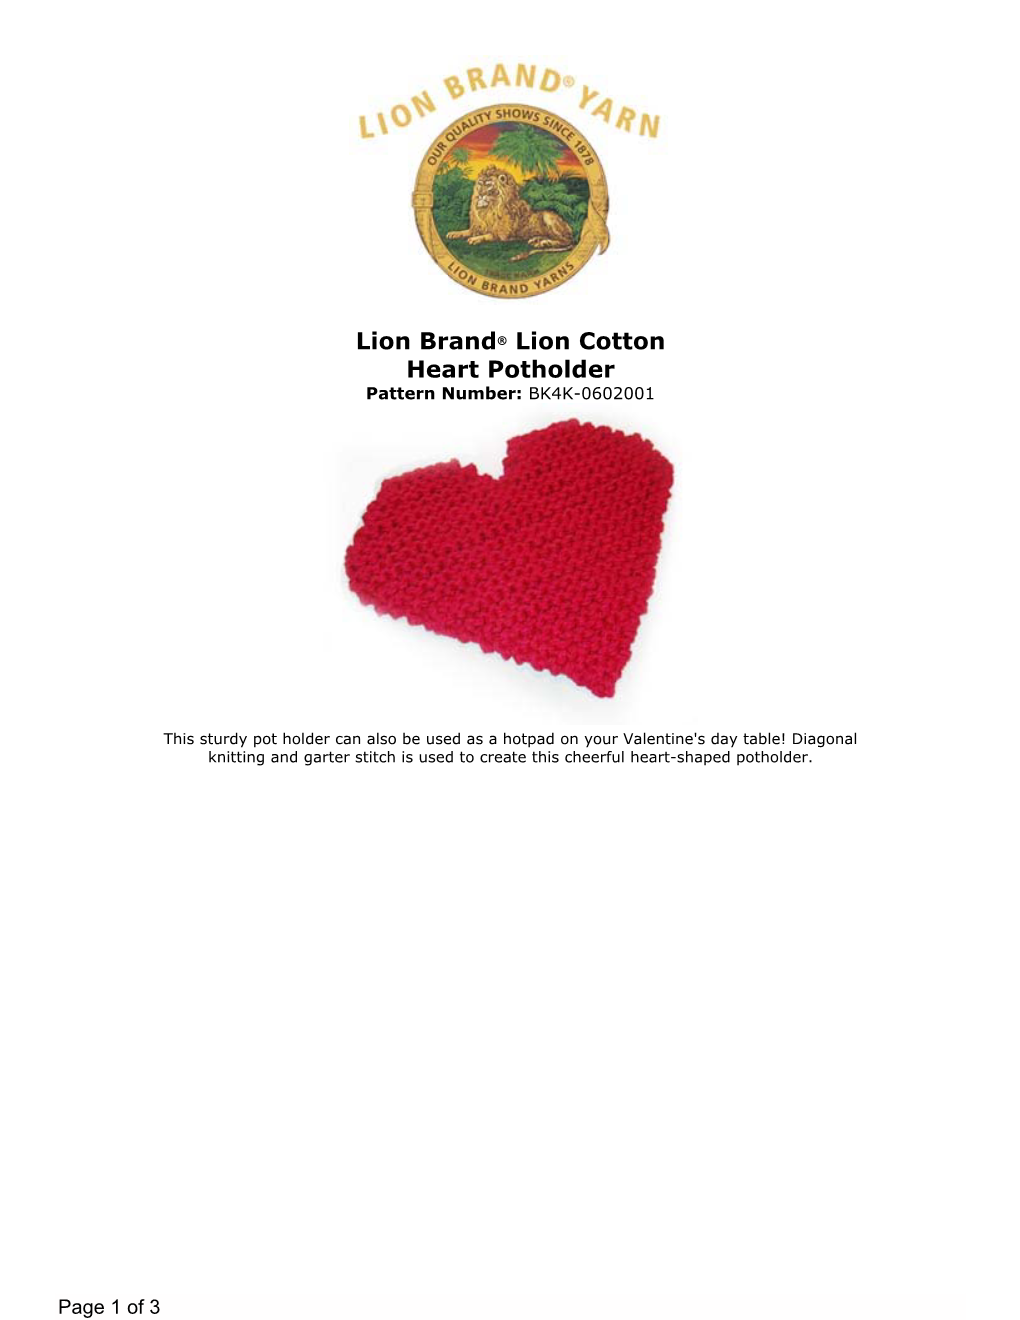 Lion Brand® Lion Cotton Heart Potholder Pattern Number: BK4K-0602001